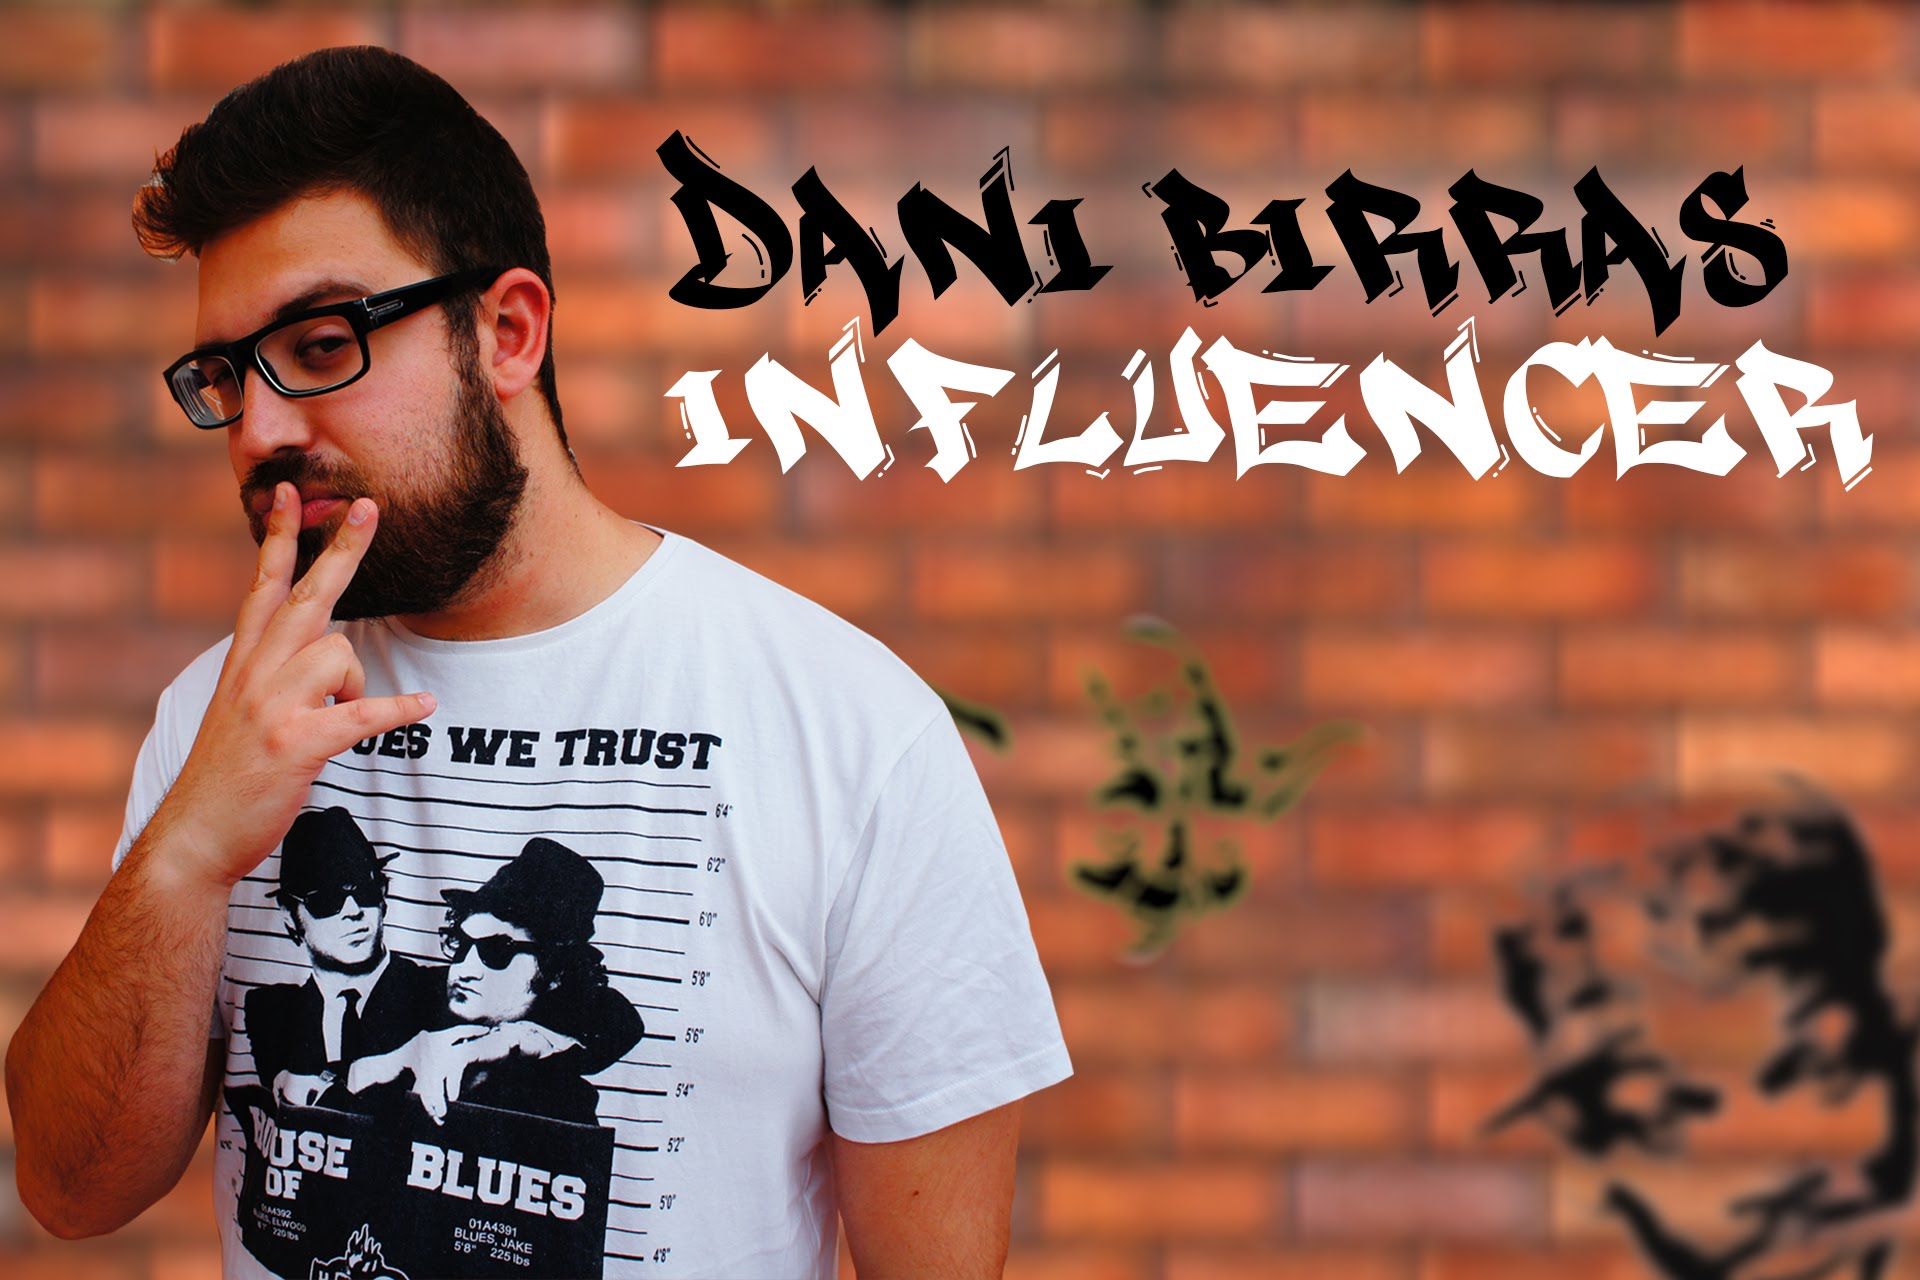 Dani Birras el influencer - Vídeo de humor